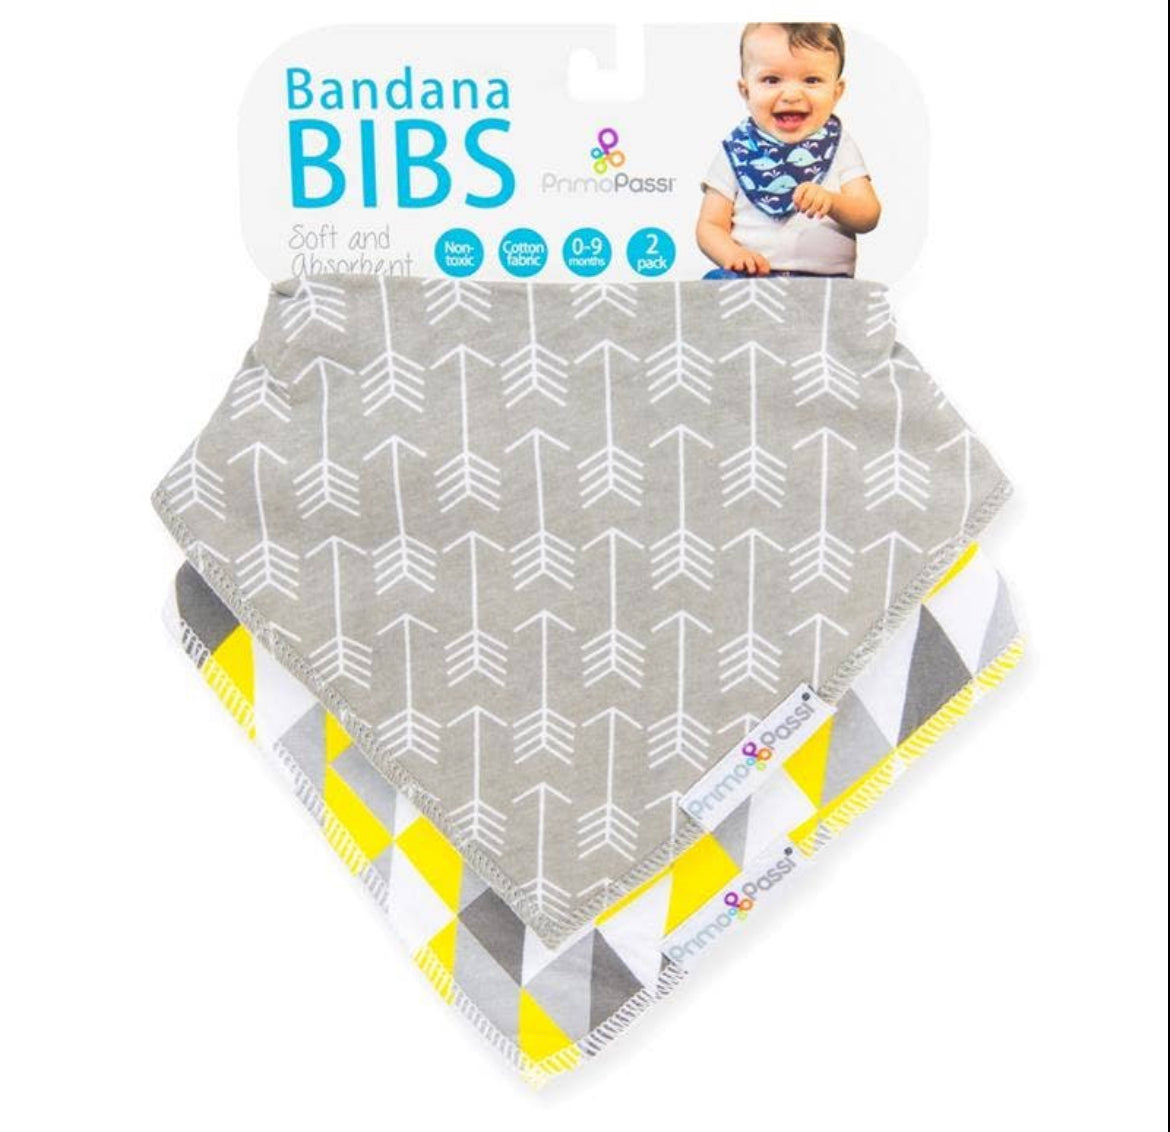 Bandana Bib (more colors available)